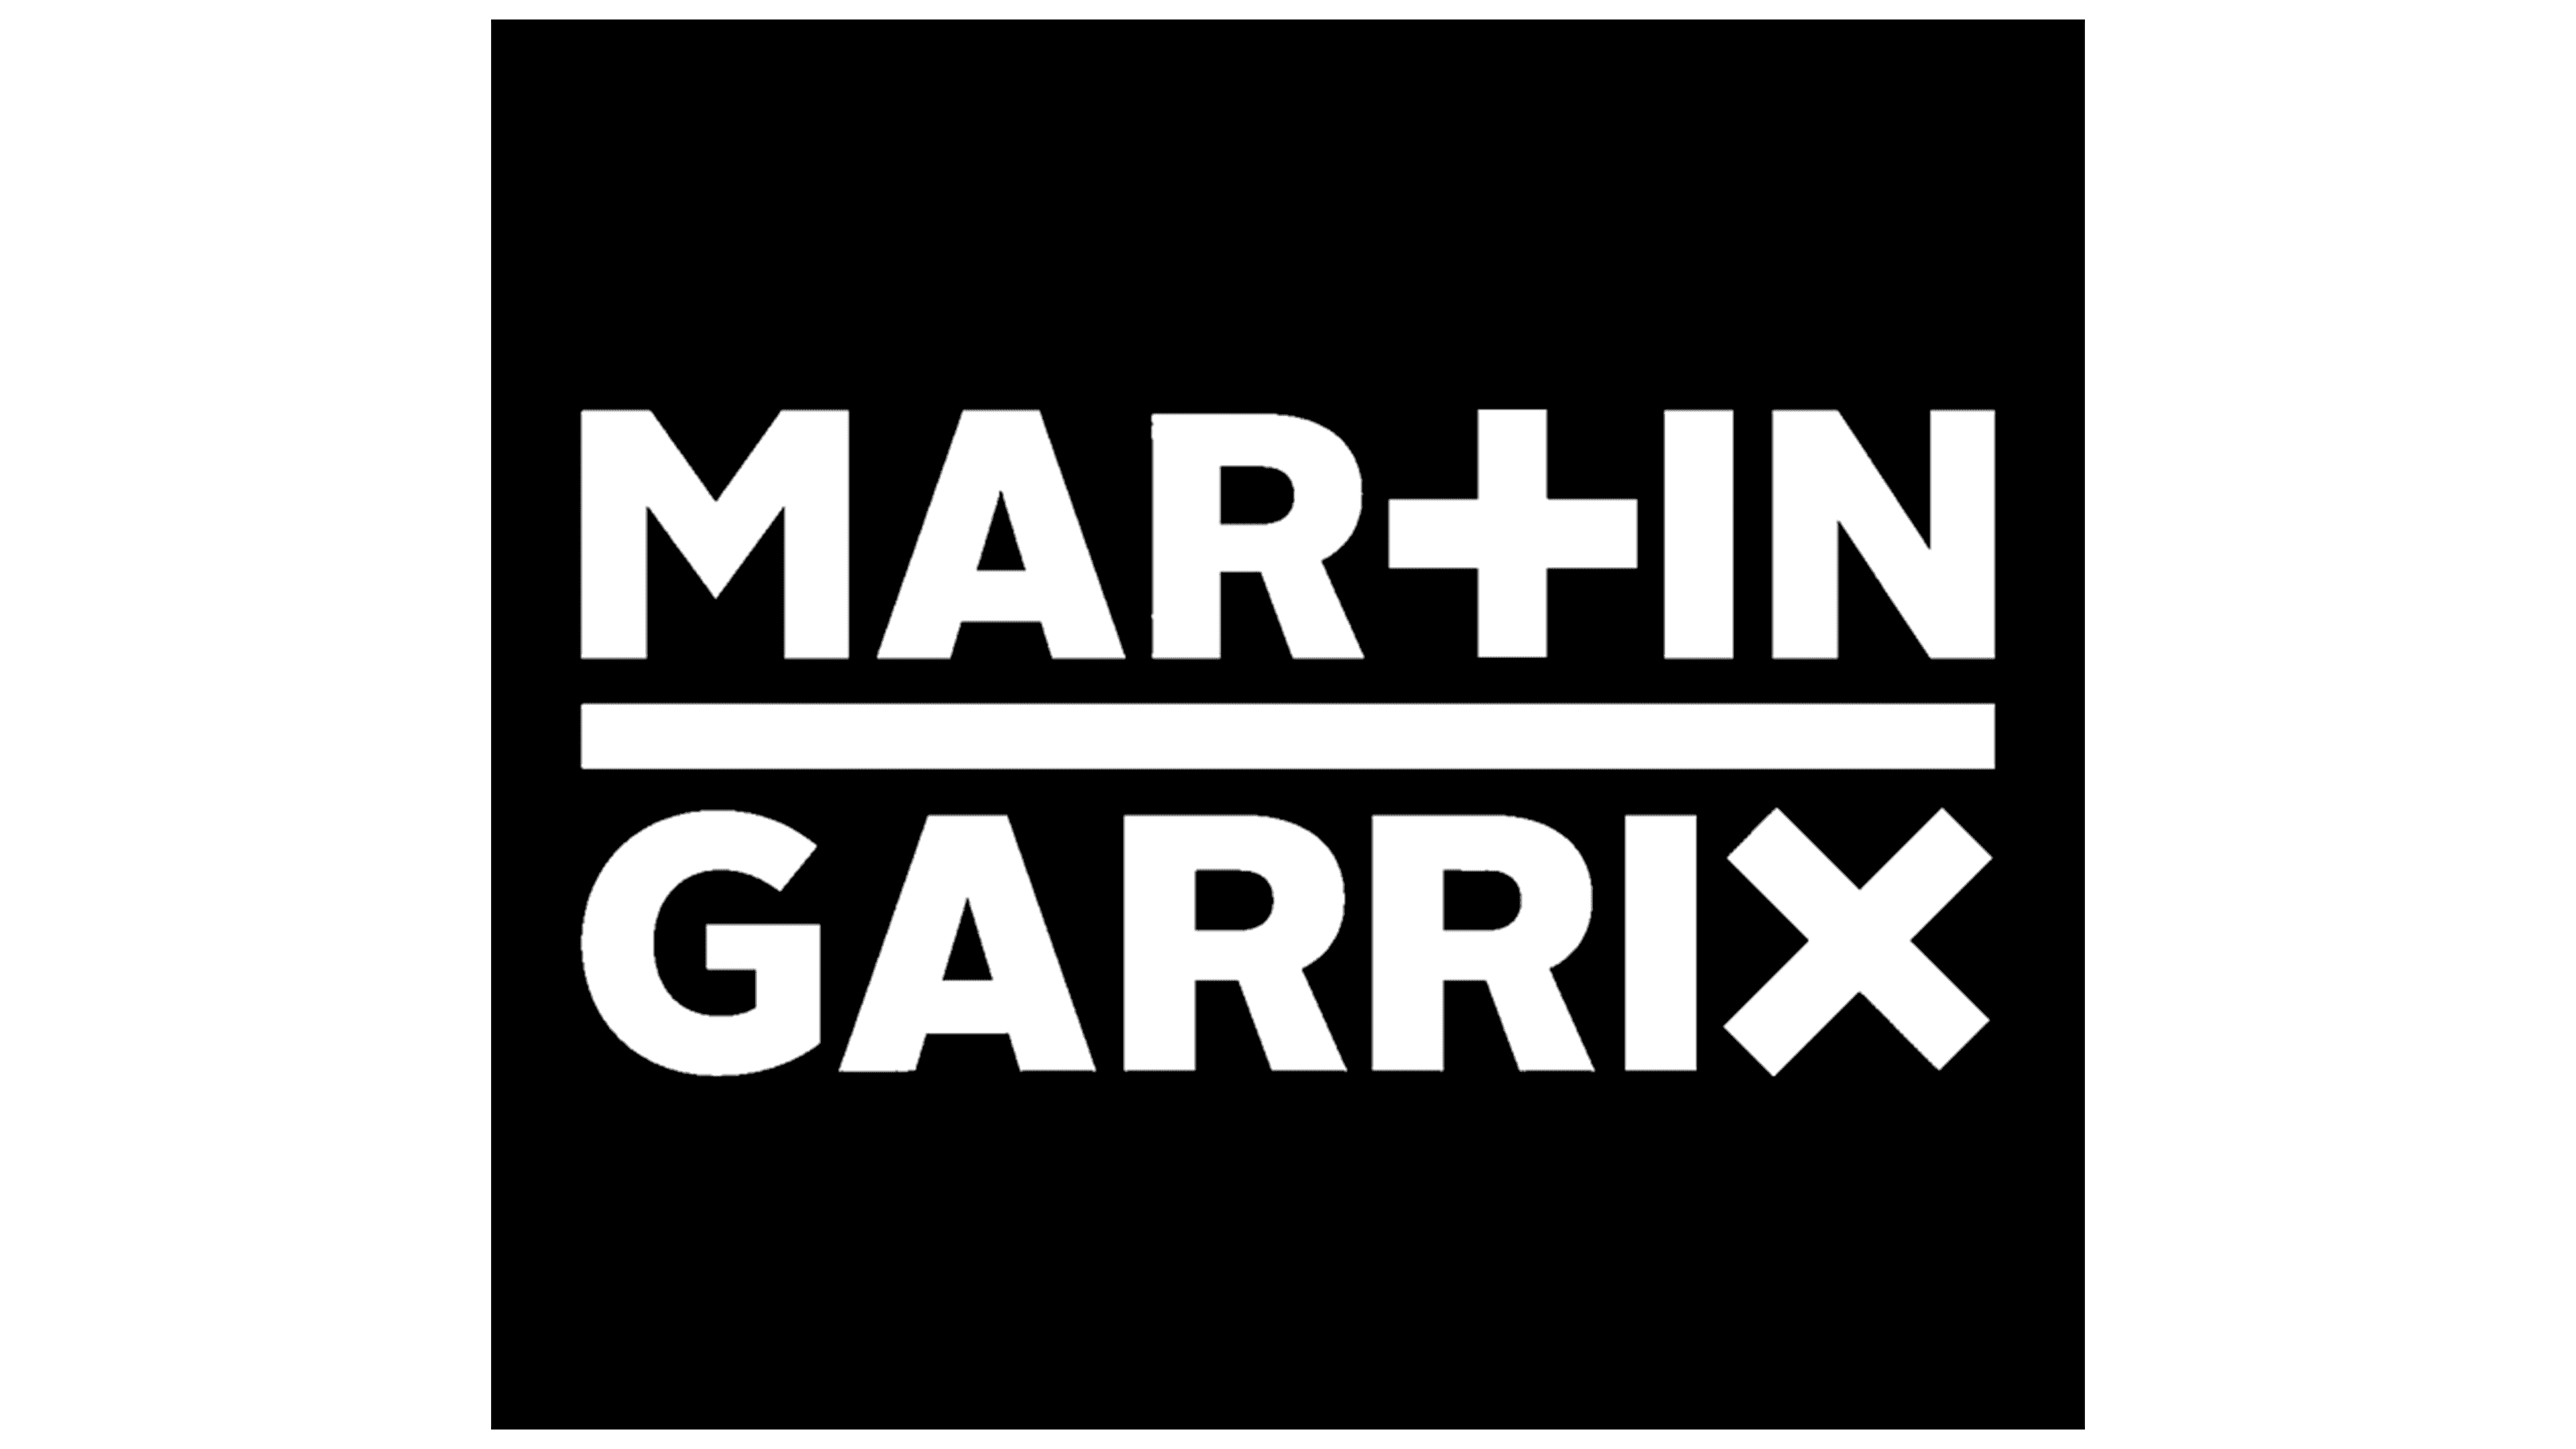 Martin Garrix LOGO REVEAL |ELEMENT 3D| |AFTER EFFECTS| - YouTube